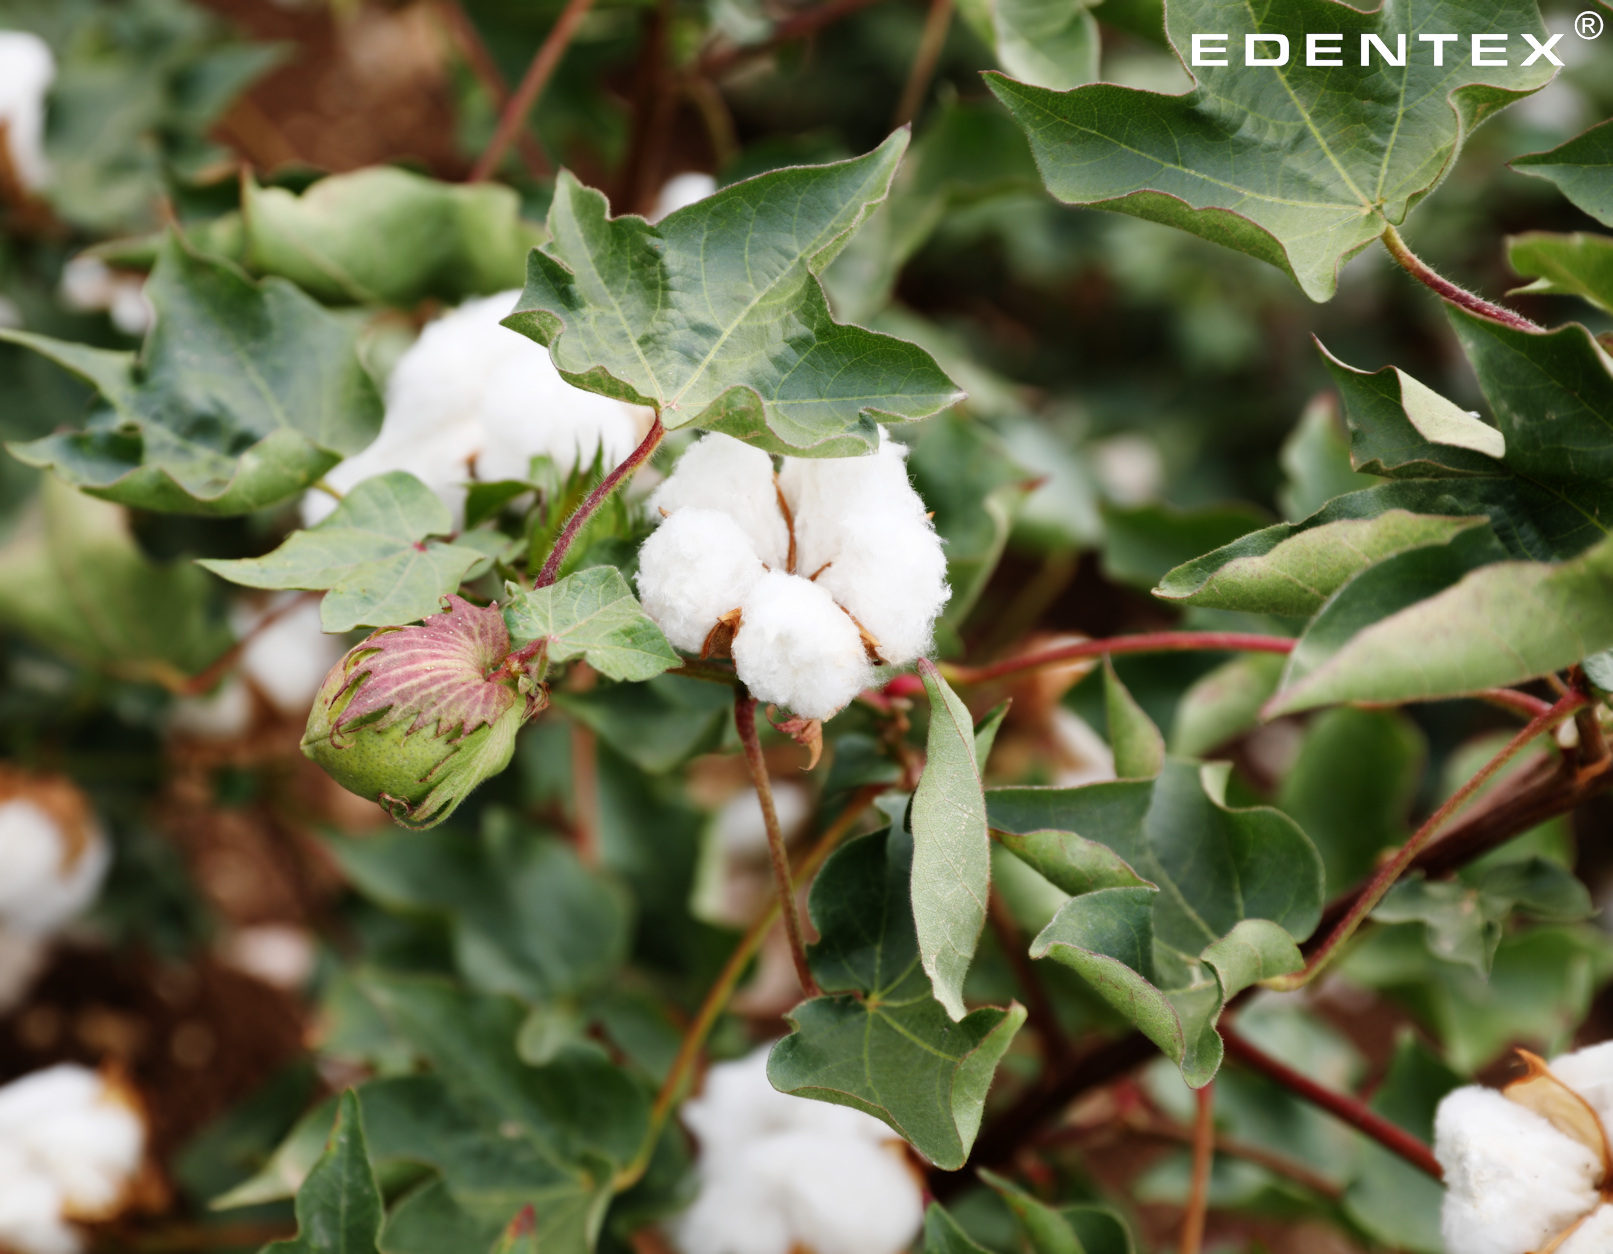 Otulony dzianinami z bawełny EDENTEX® możesz cieszyć się ich pięknem, jednocześnie pozostając w zgodzie z naturą